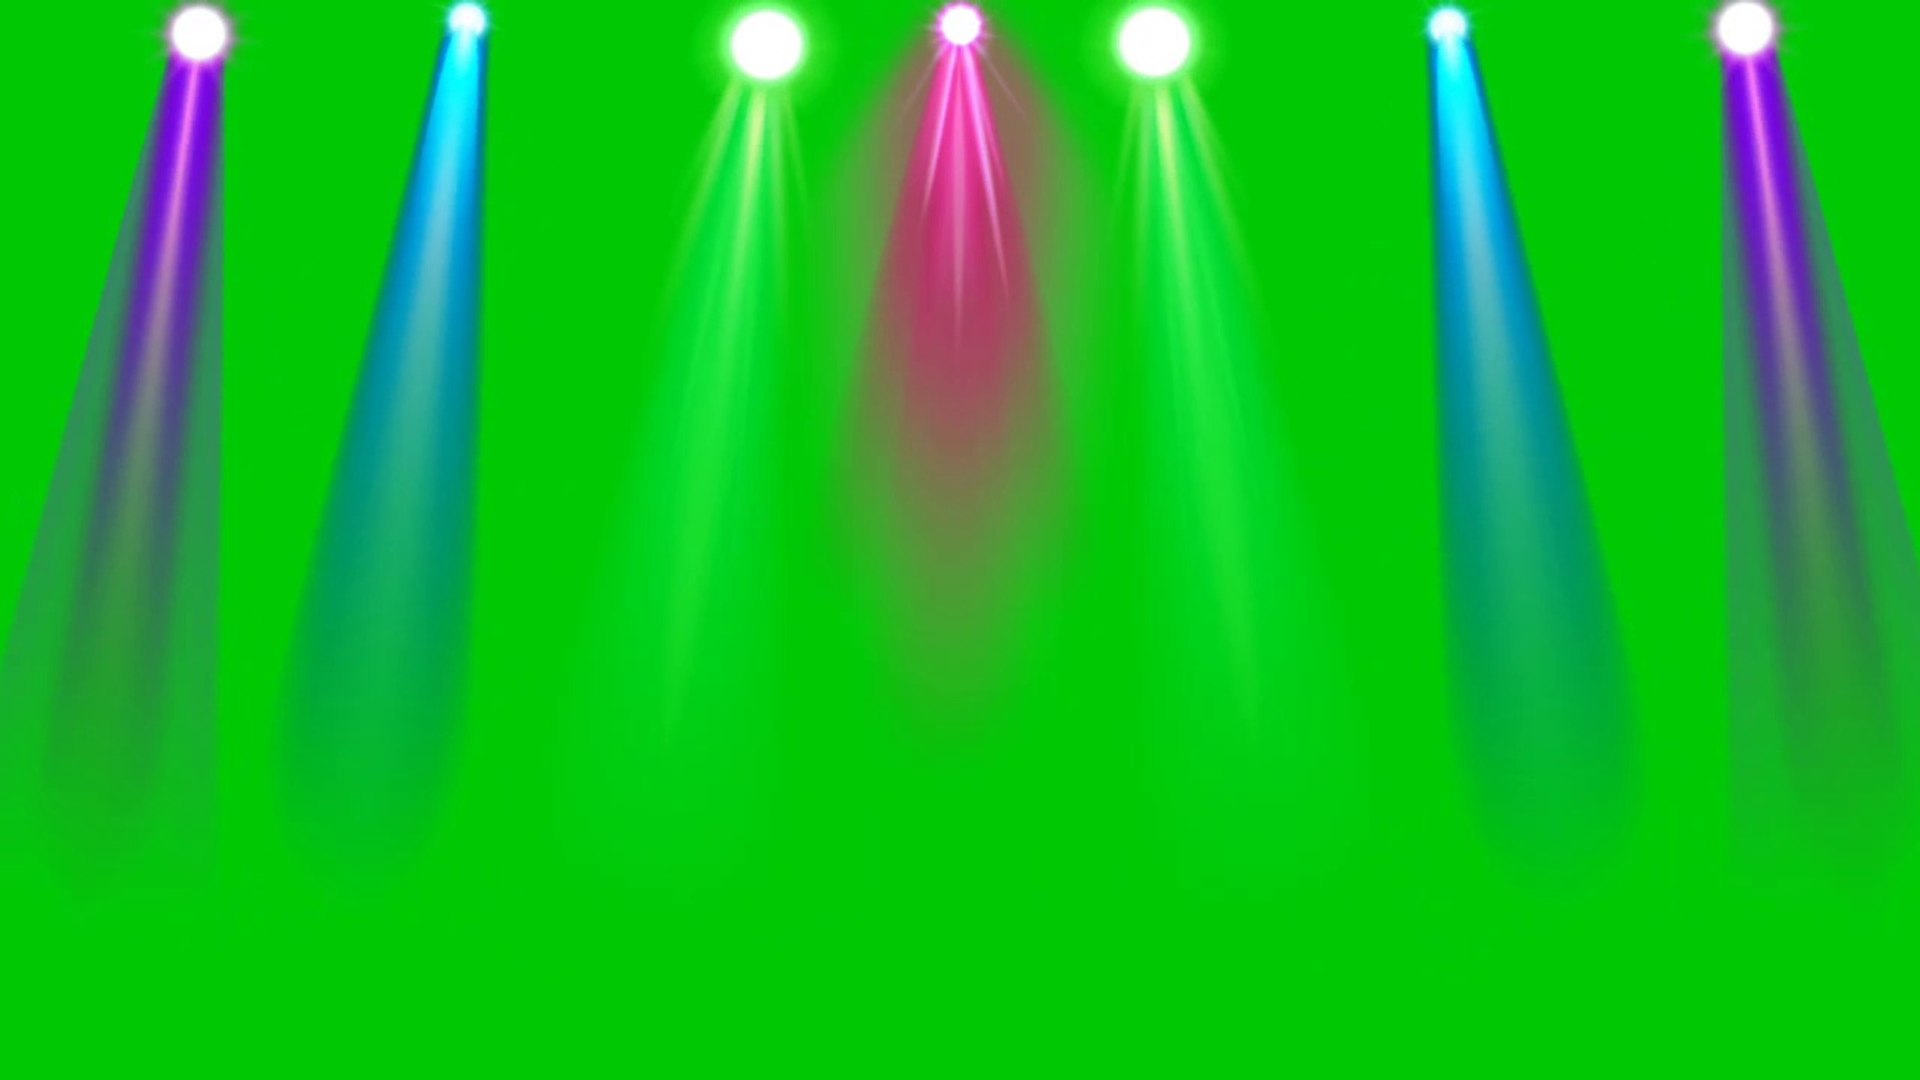 Nếu bạn đang tìm kiếm ánh sáng nghệ thuật cho bất cứ sự kiện cuối tuần hoặc bữa tiệc náo nhiệt nào, các disco lights chắc chắn là một sự lựa chọn hoàn hảo. Với các hiệu ứng ánh sáng đa dạng, bạn sẽ tạo ra một bầu không khí tưng bừng, cùng với sự pha trộn âm nhạc sôi động, tạo ra một buổi tiệc đáng nhớ nhất.